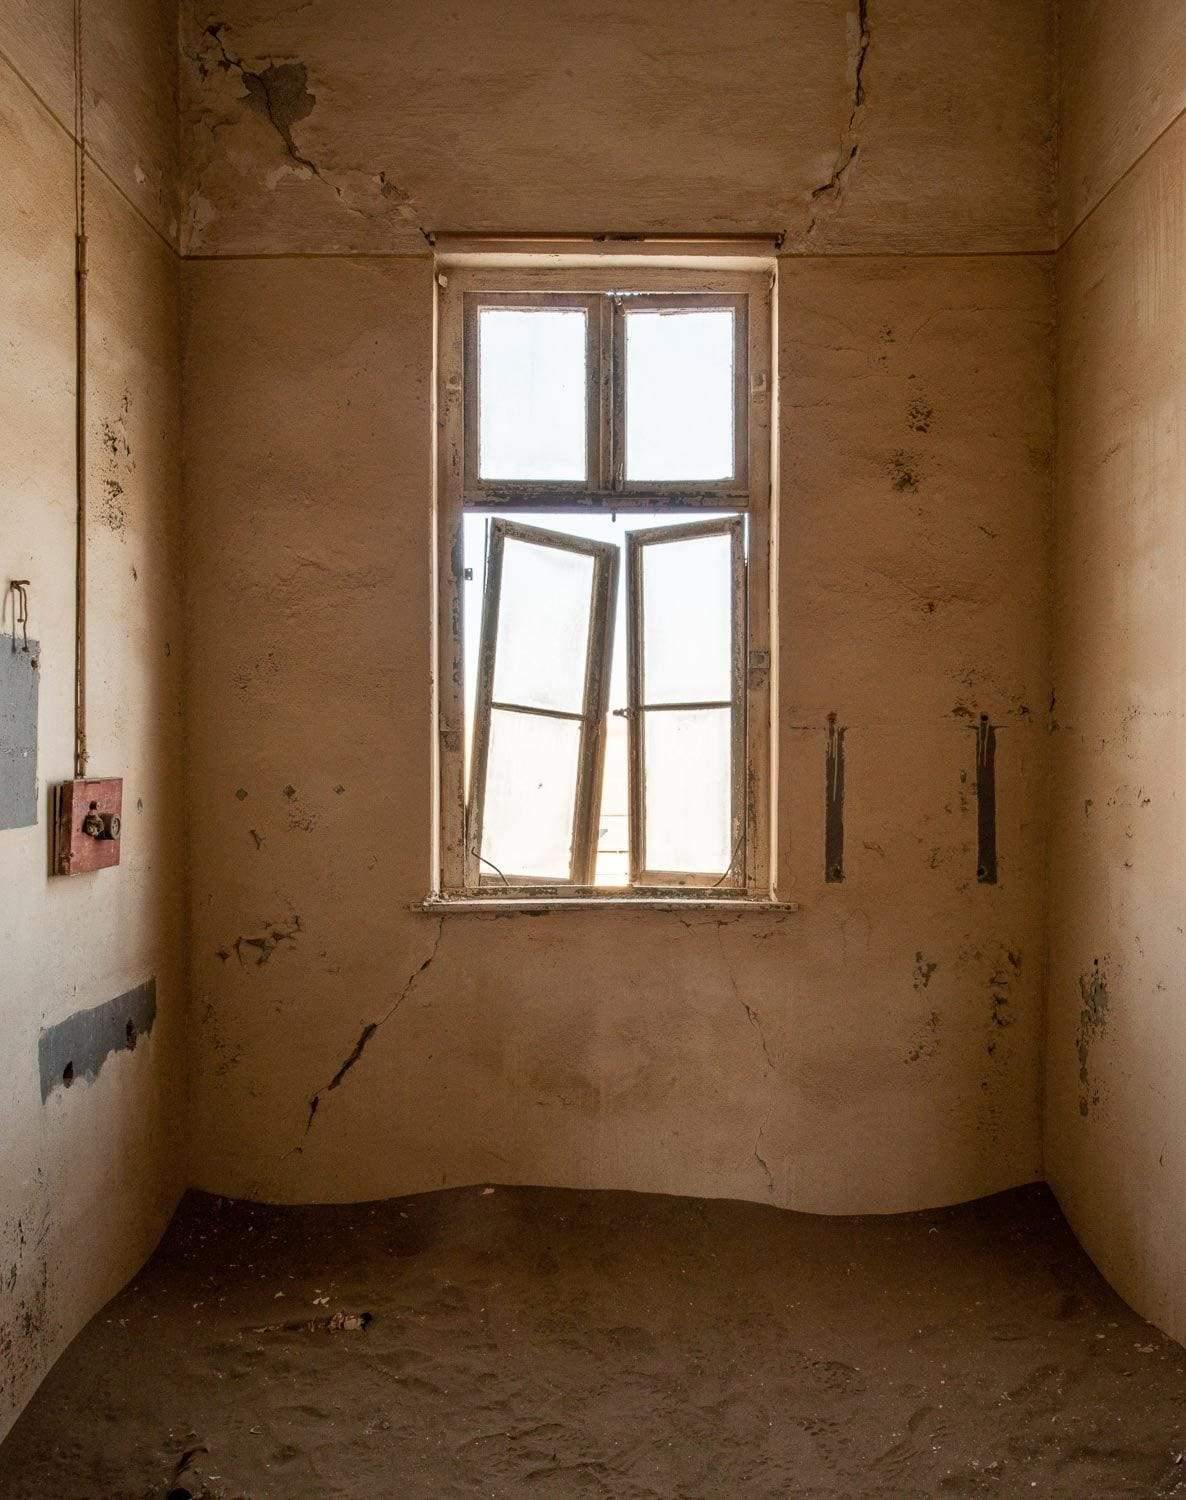 Making of a room with a broken window, Kolmanskop #18